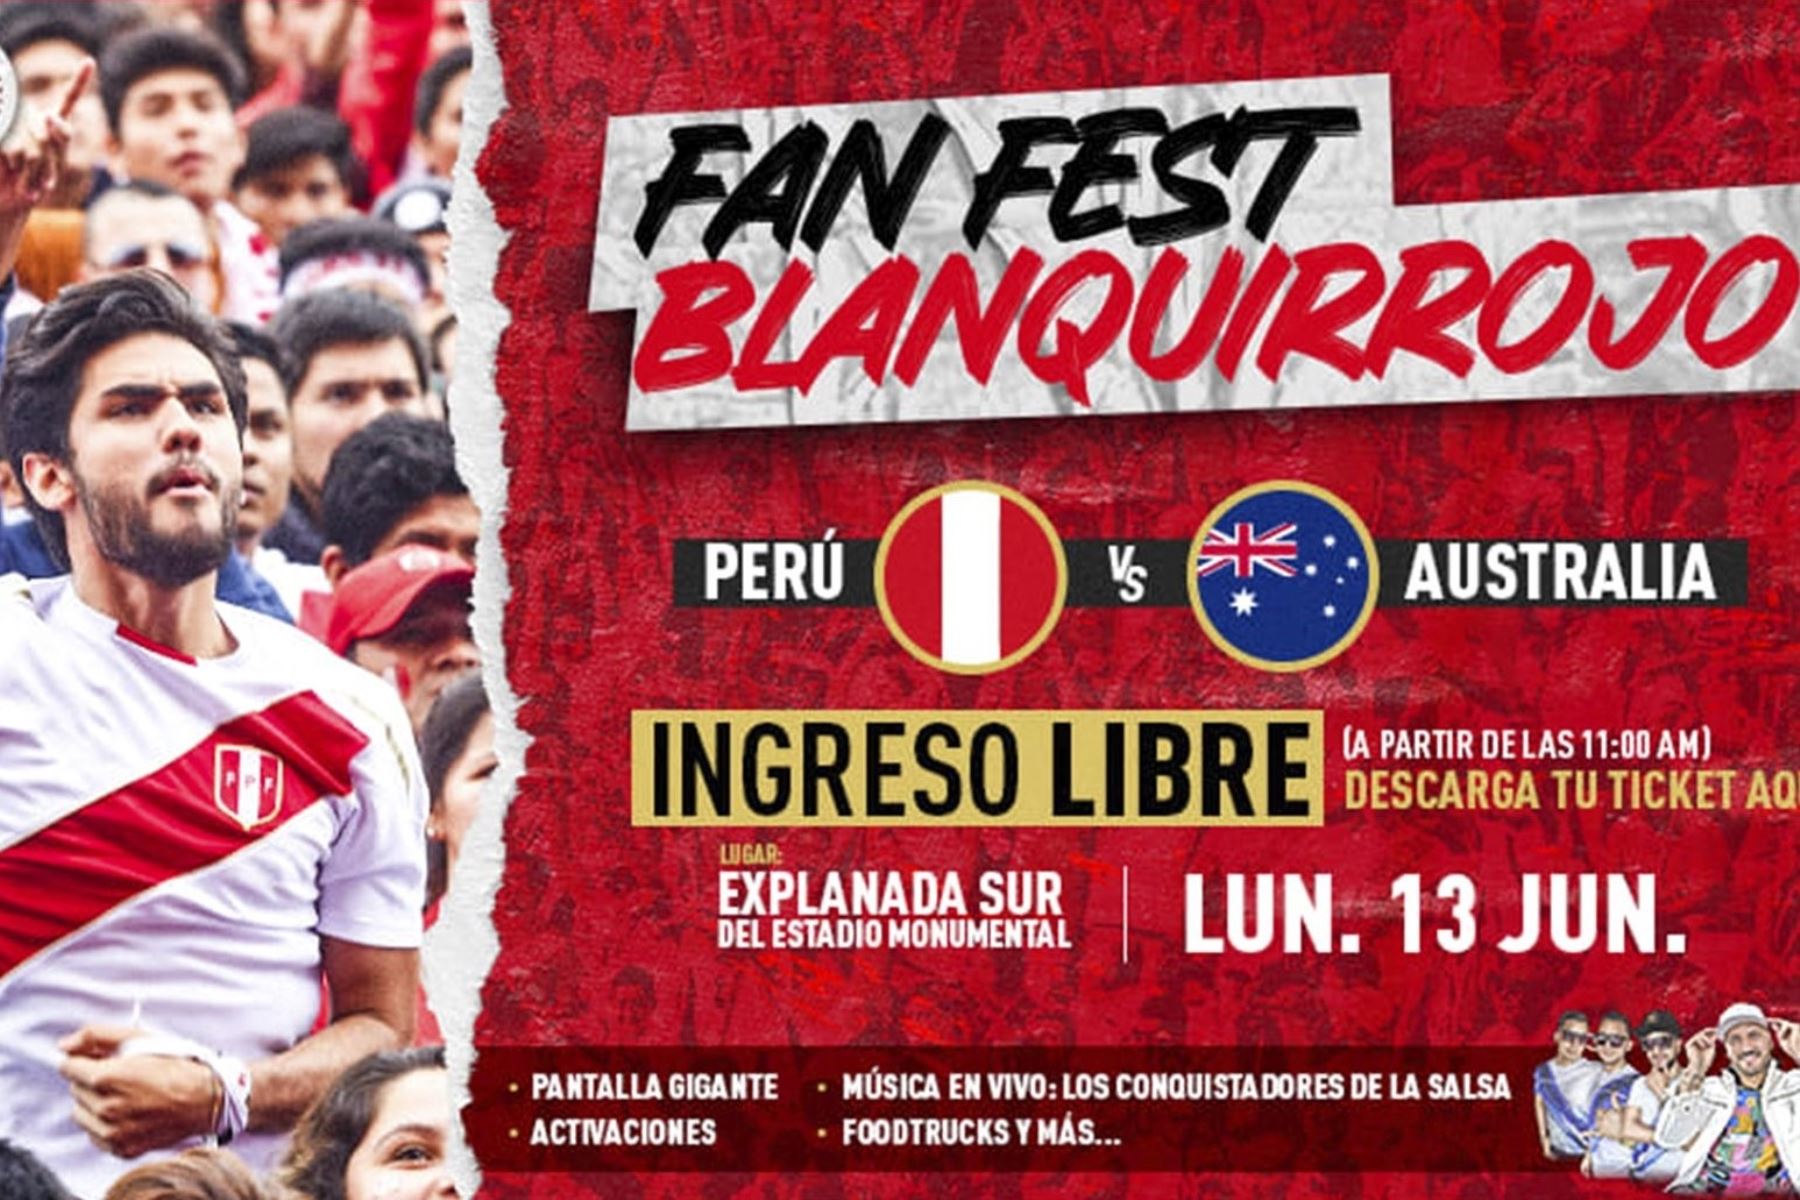 Fan Fest Blanquirrojo: Evento instalará pantalla gigante en el Monumental para ver repechaje Perú-Australia.